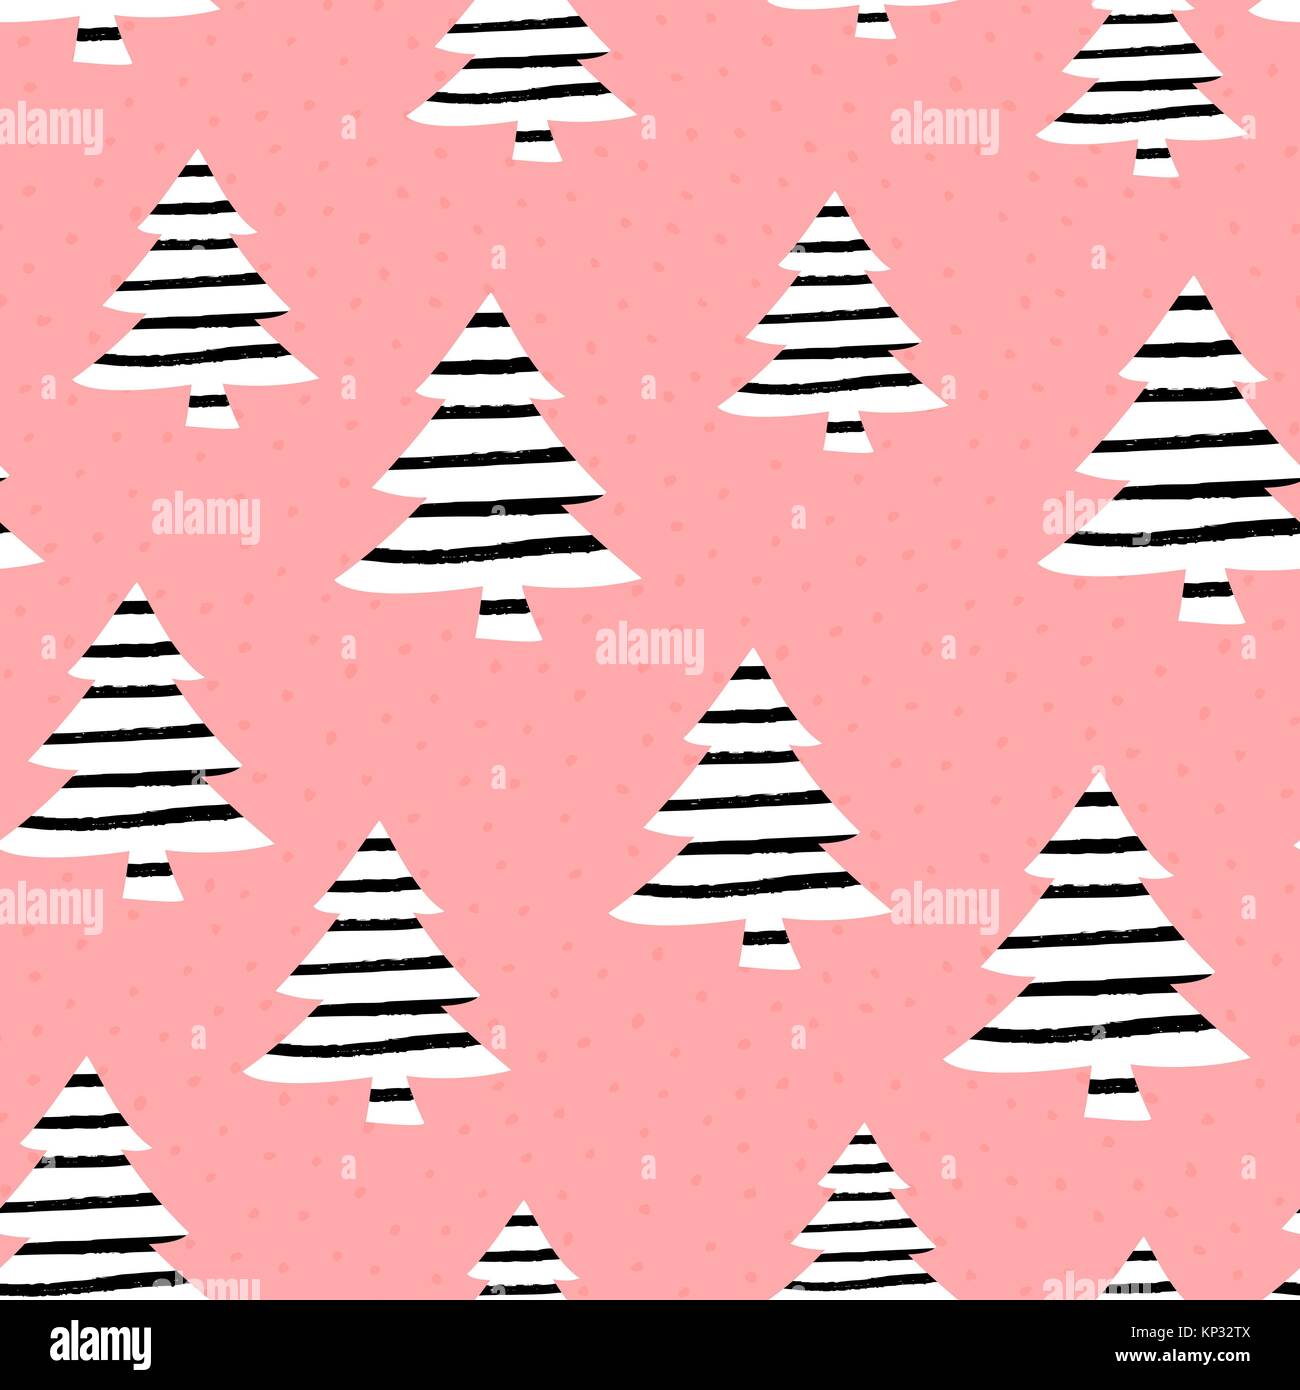 Pink The Season Christmas Phone Wallpapers